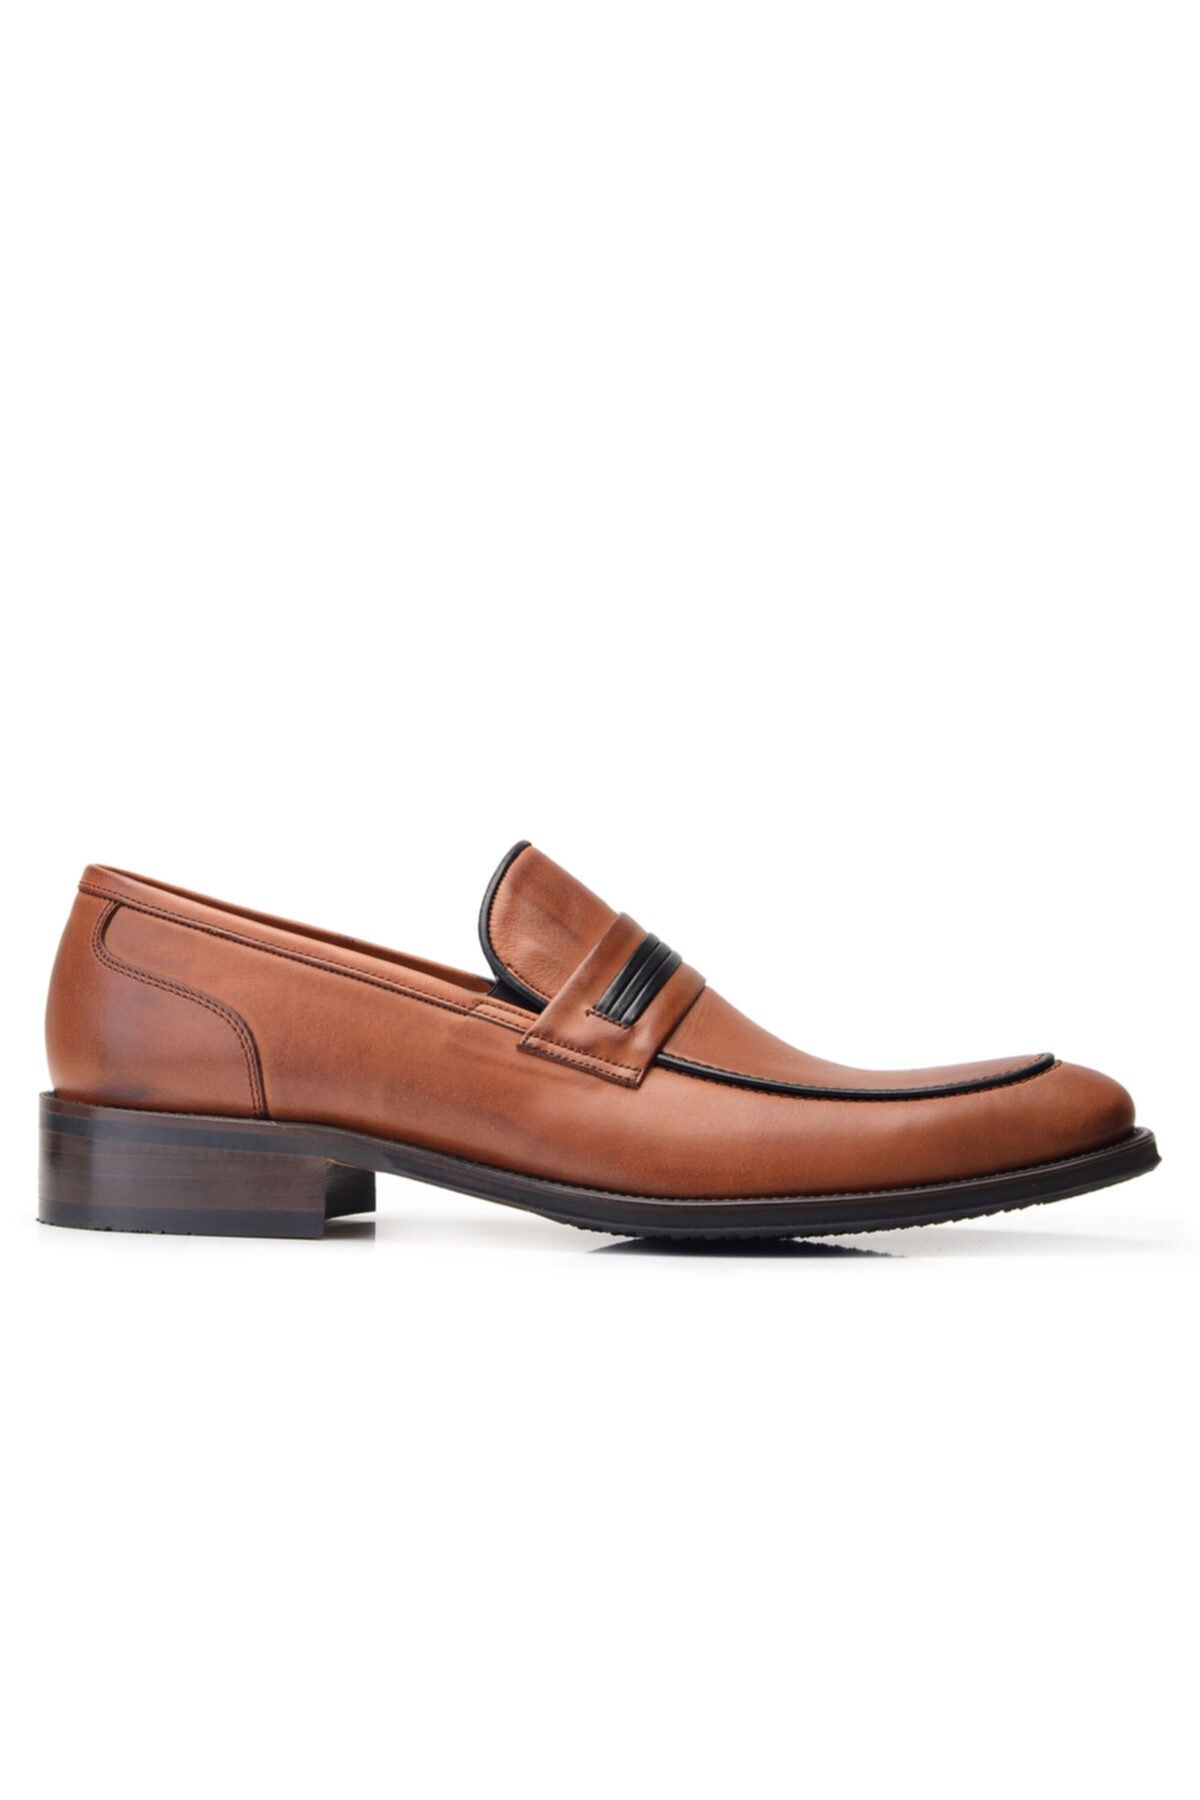 Nevzat Onay Hakiki Deri Taba Klasik Loafer Erkek Ayakkabı -11902-